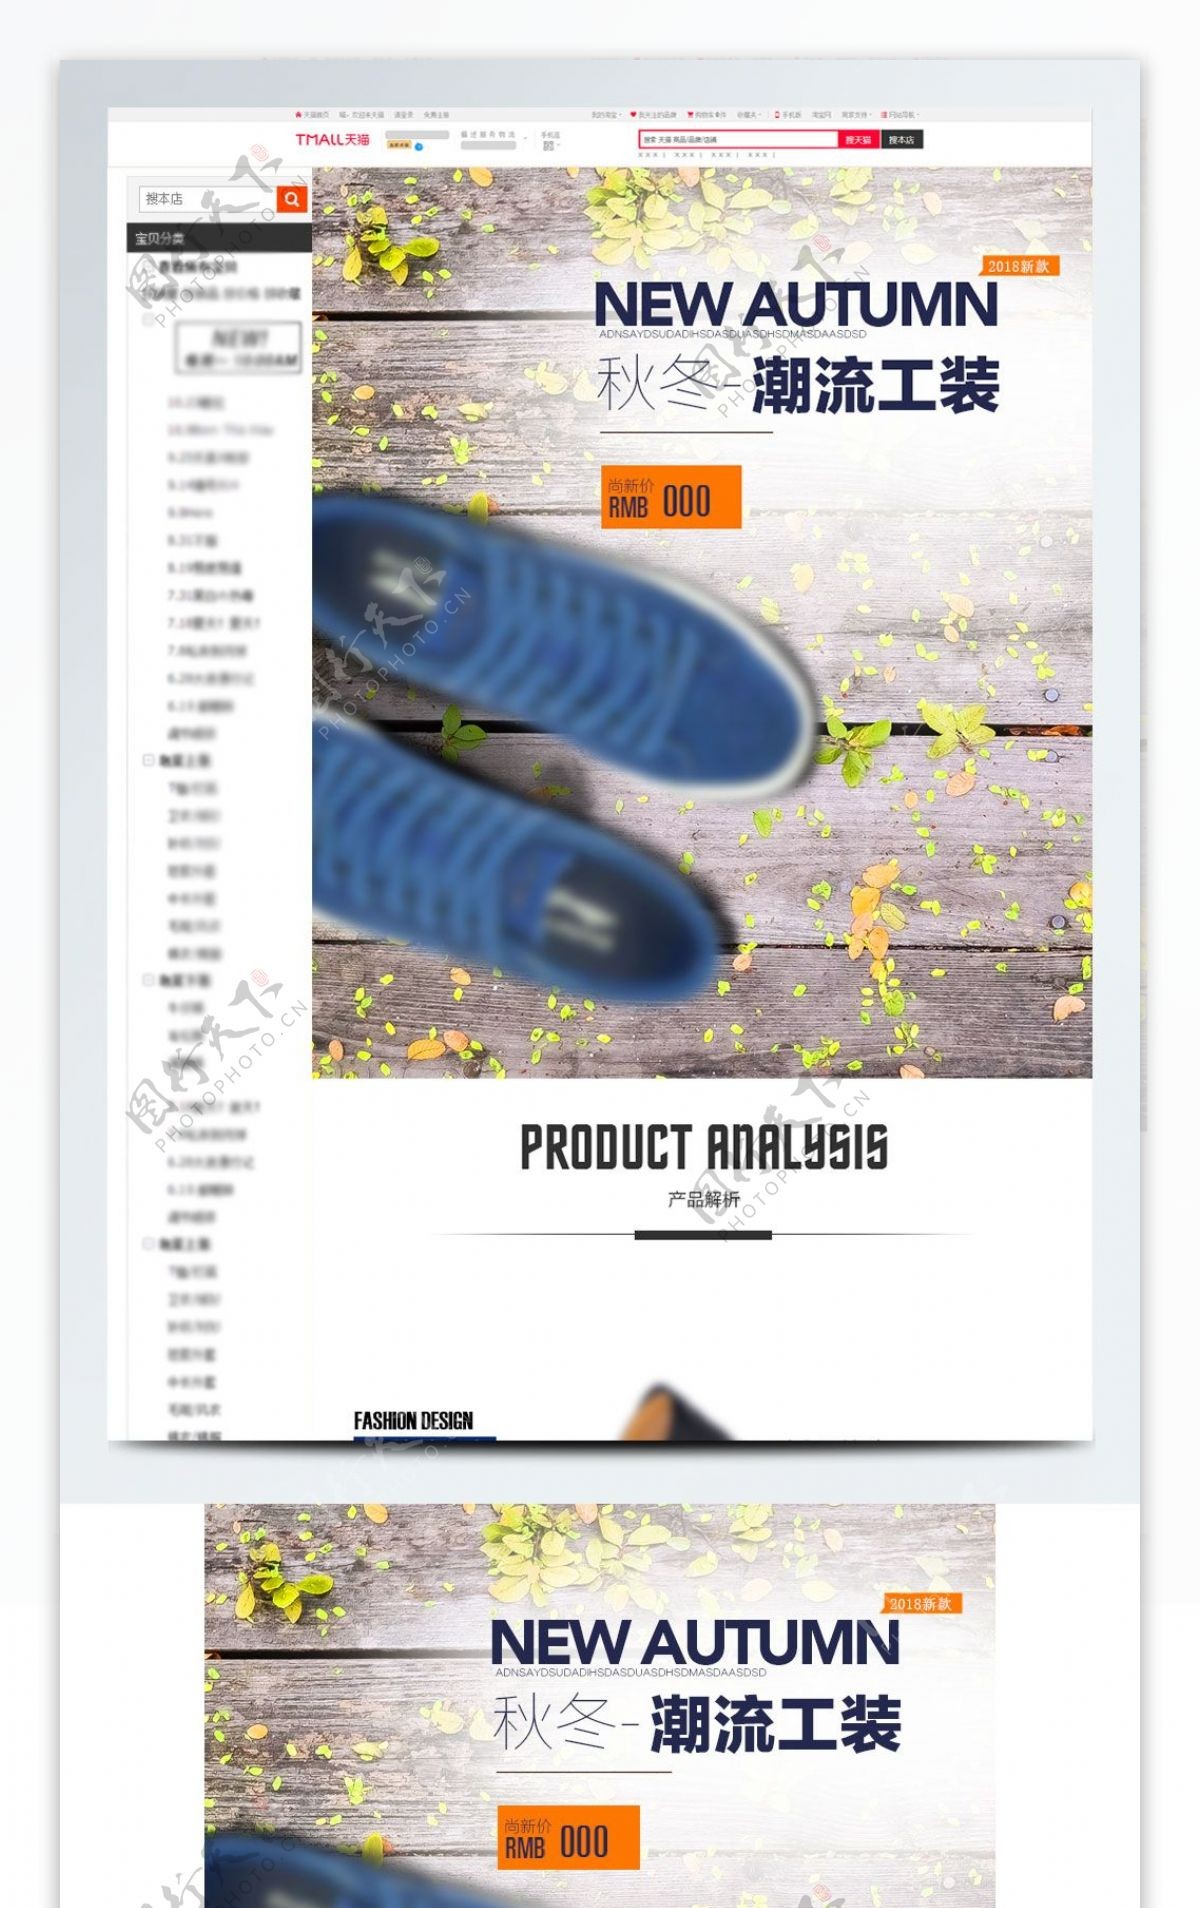 运动鞋男鞋模板电商详情页描述psd源文件